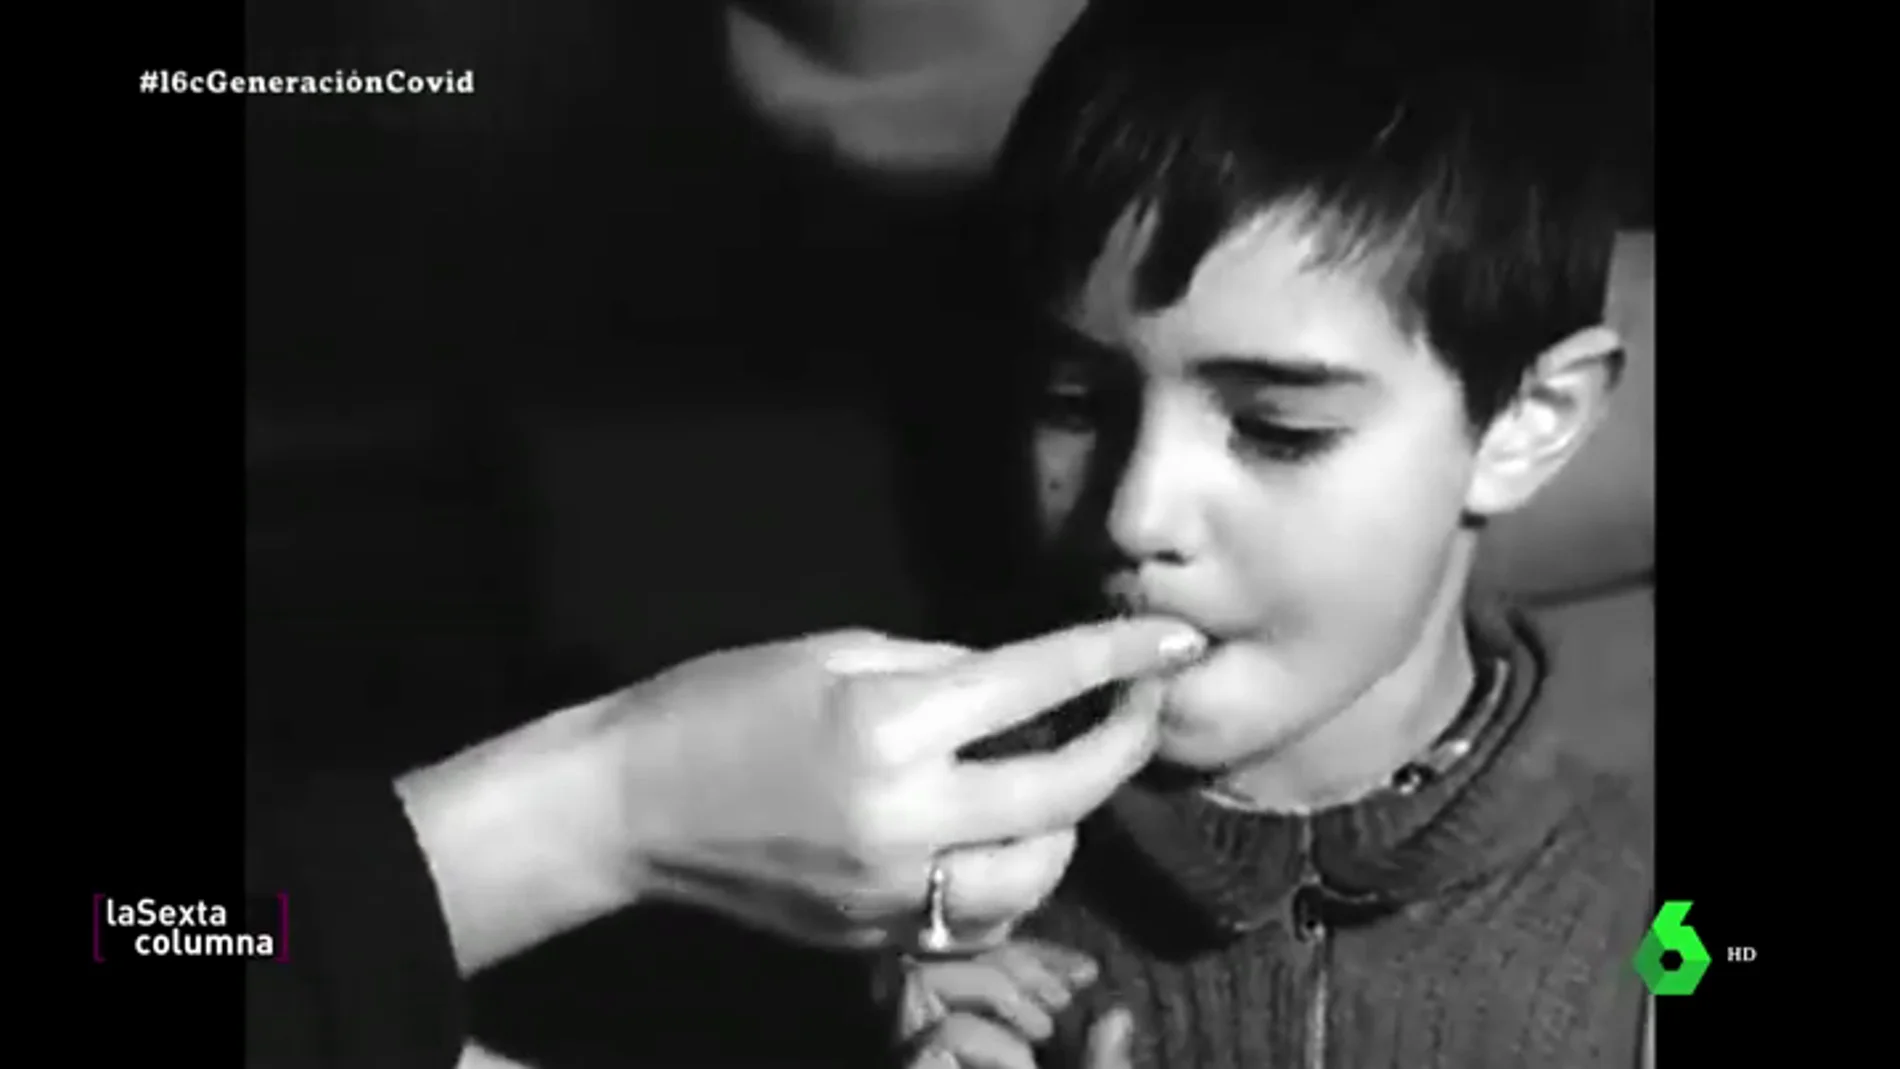 La original solución para llevar la vacuna de la polio a toda España ante la falta de medios durante el franquismo